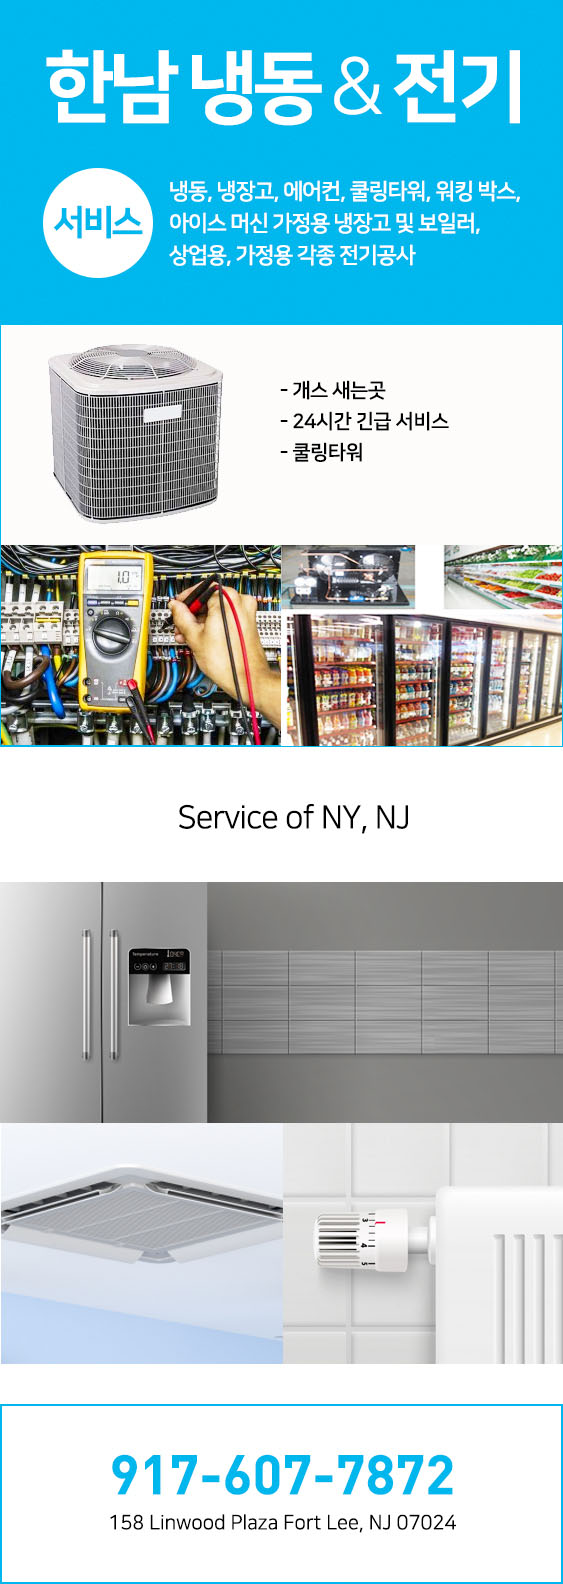 한남 냉동 | 뉴욕 냉동, 뉴저지 냉동, 뉴욕 에어컨, 뉴저지 에어컨디셔닝